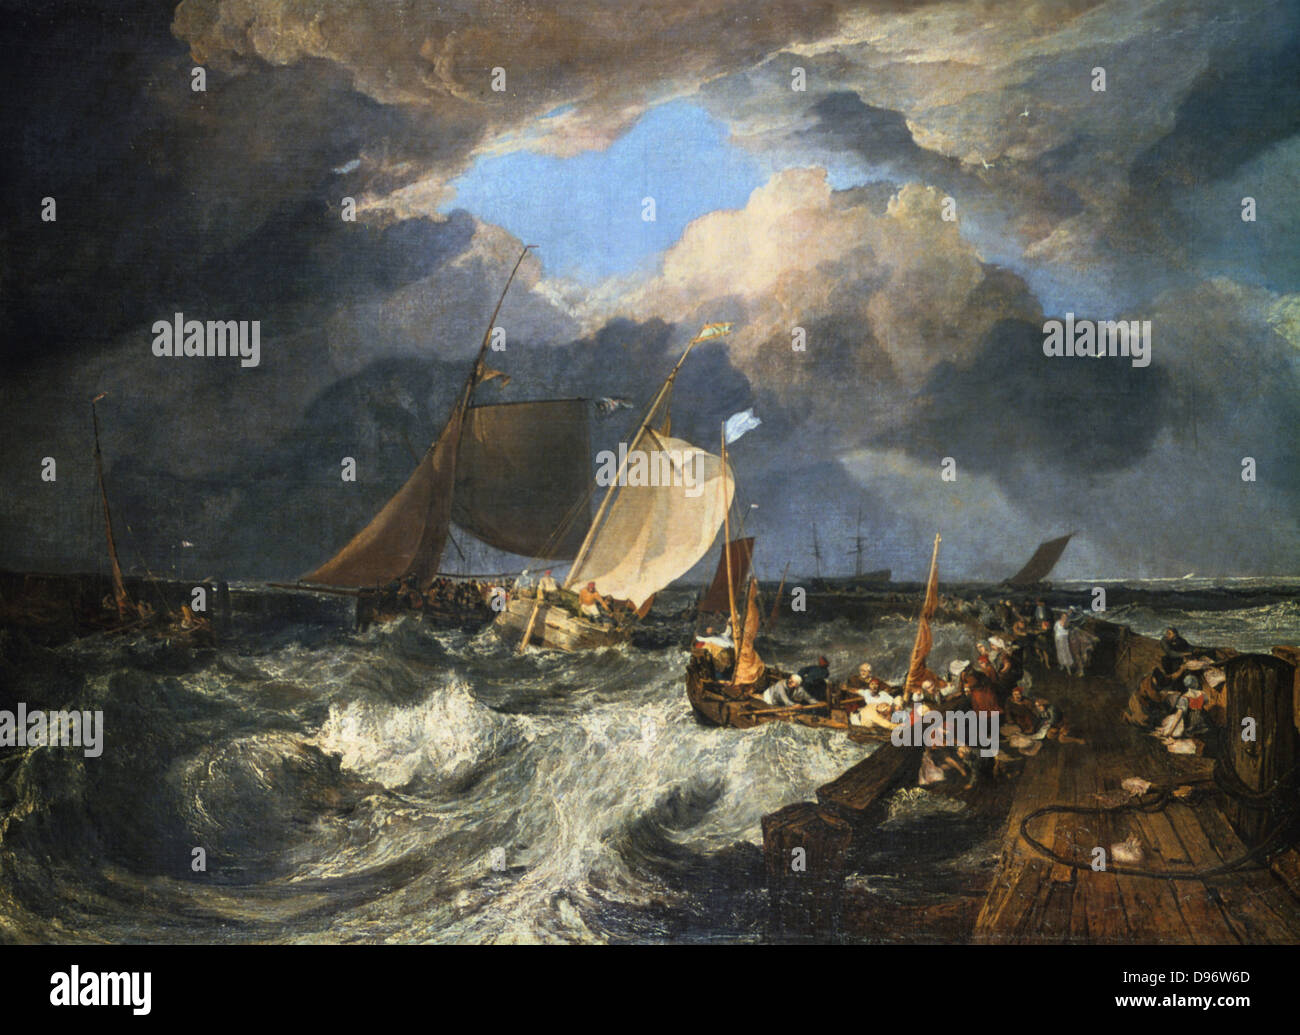 Calais Pier : un bateau de paquets arrivant', 1803 : Joseph Mallord William Turner (1775-1851) l'artiste anglais. Huile sur toile. Banque D'Images